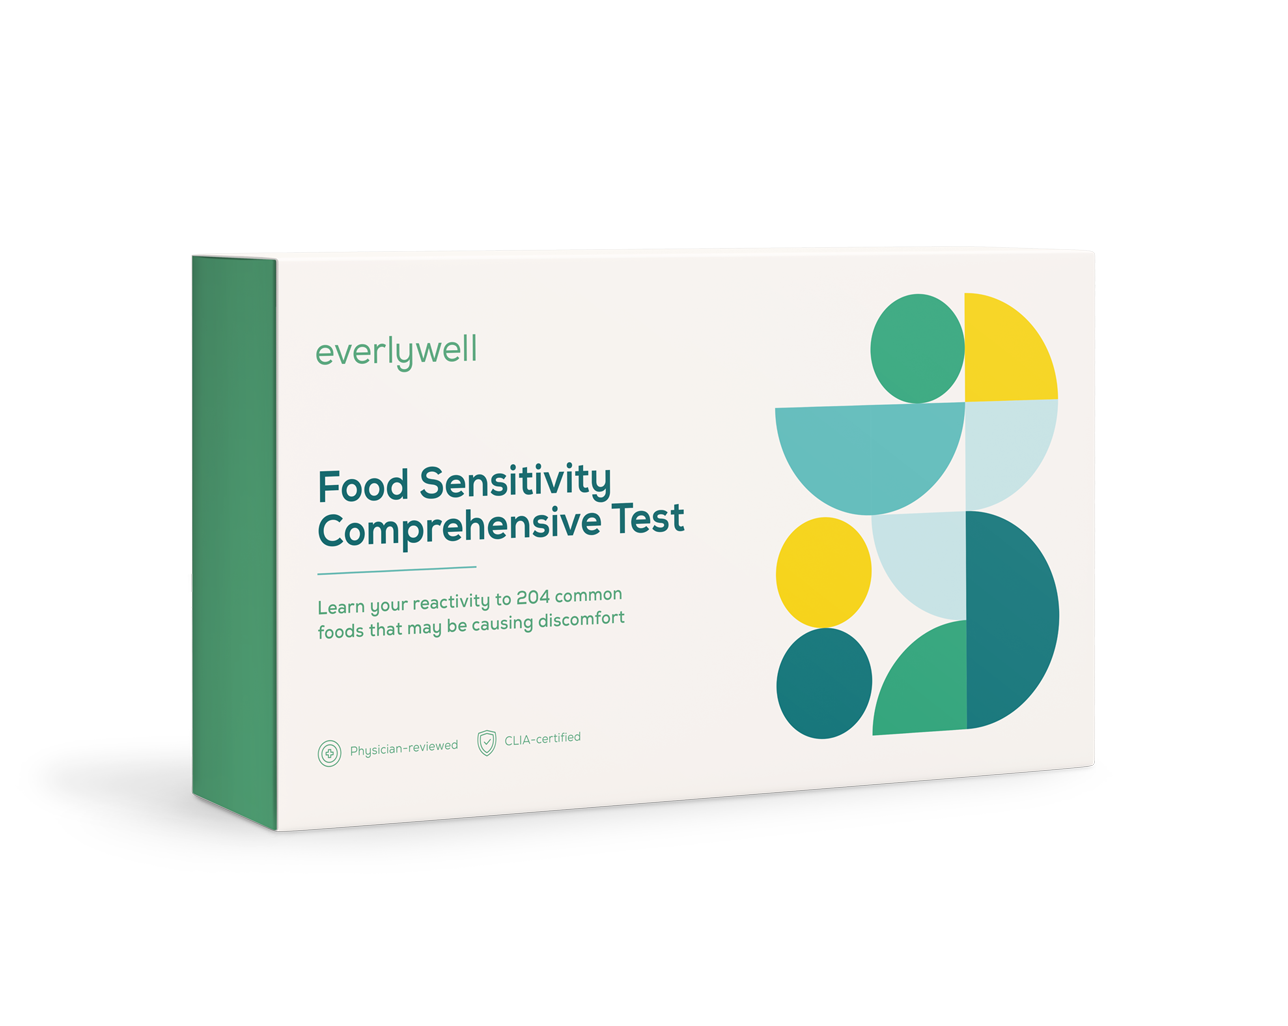 At-home Food Sensitivity Comprehensive Test